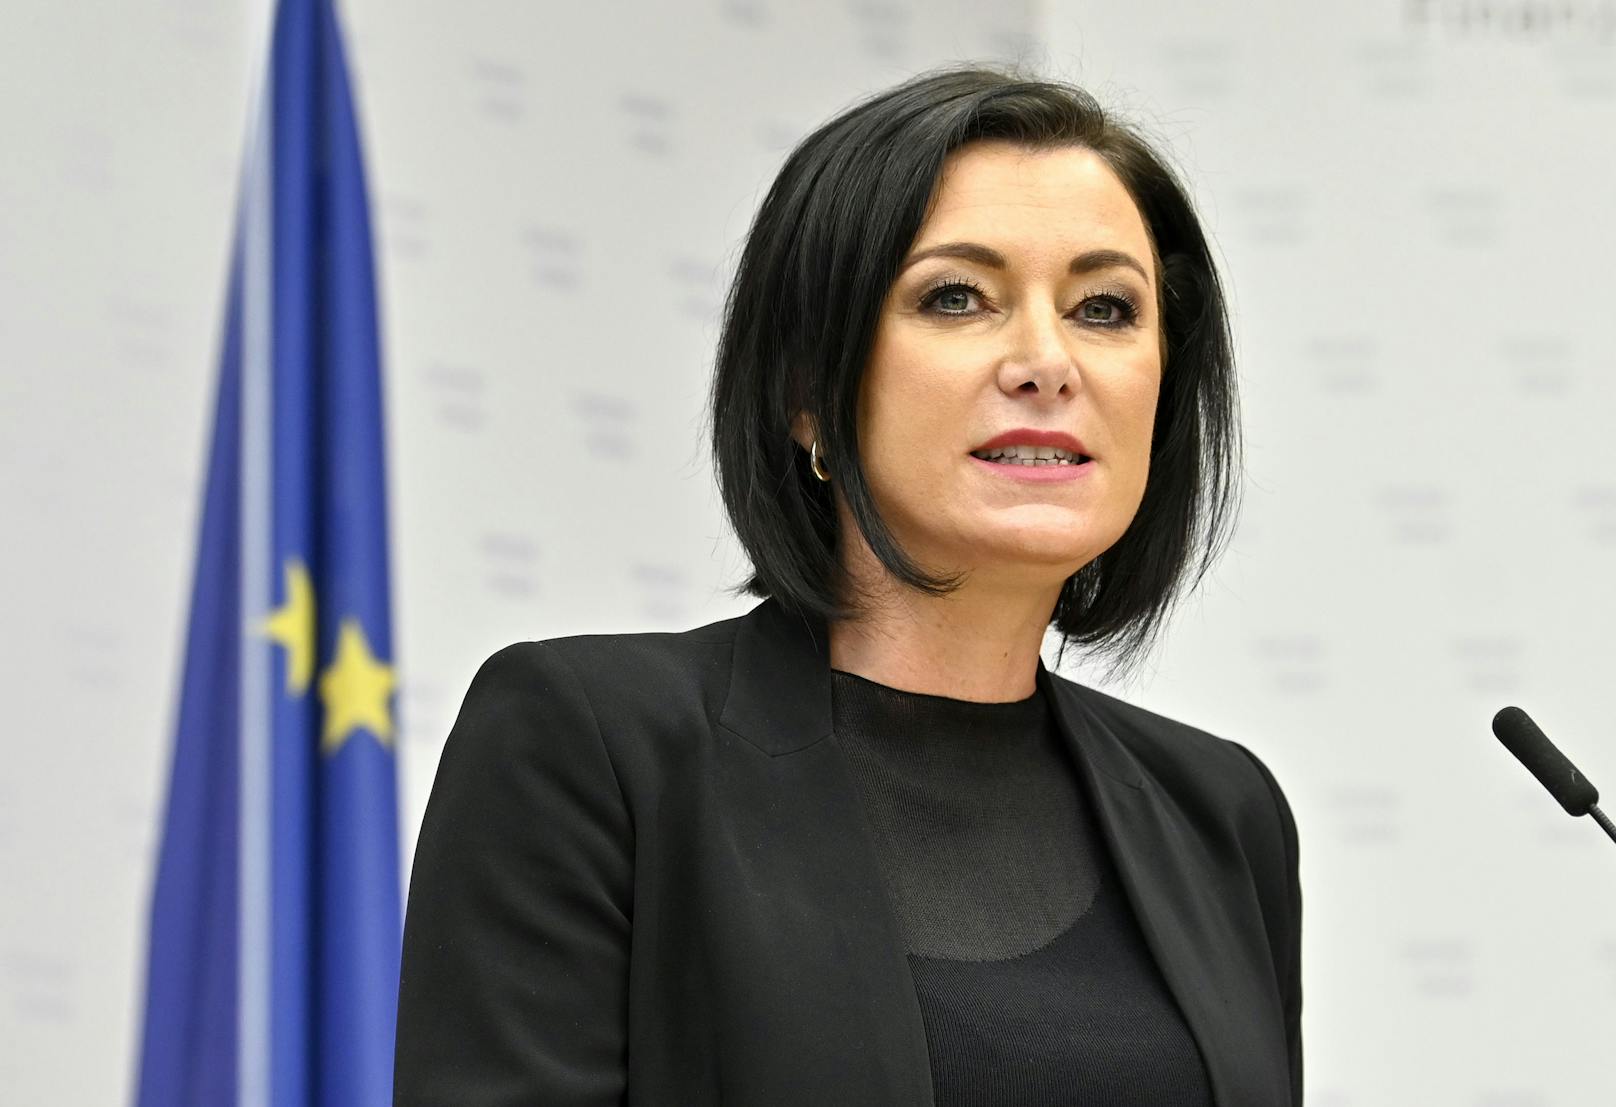 VP-Tourismusministerin Elisabeth Köstinger sprach im Ö1-Mittagsjournal unter anderem über die FPÖ, das Lockdown-Ende sowie die Regelungen zu Silvester.